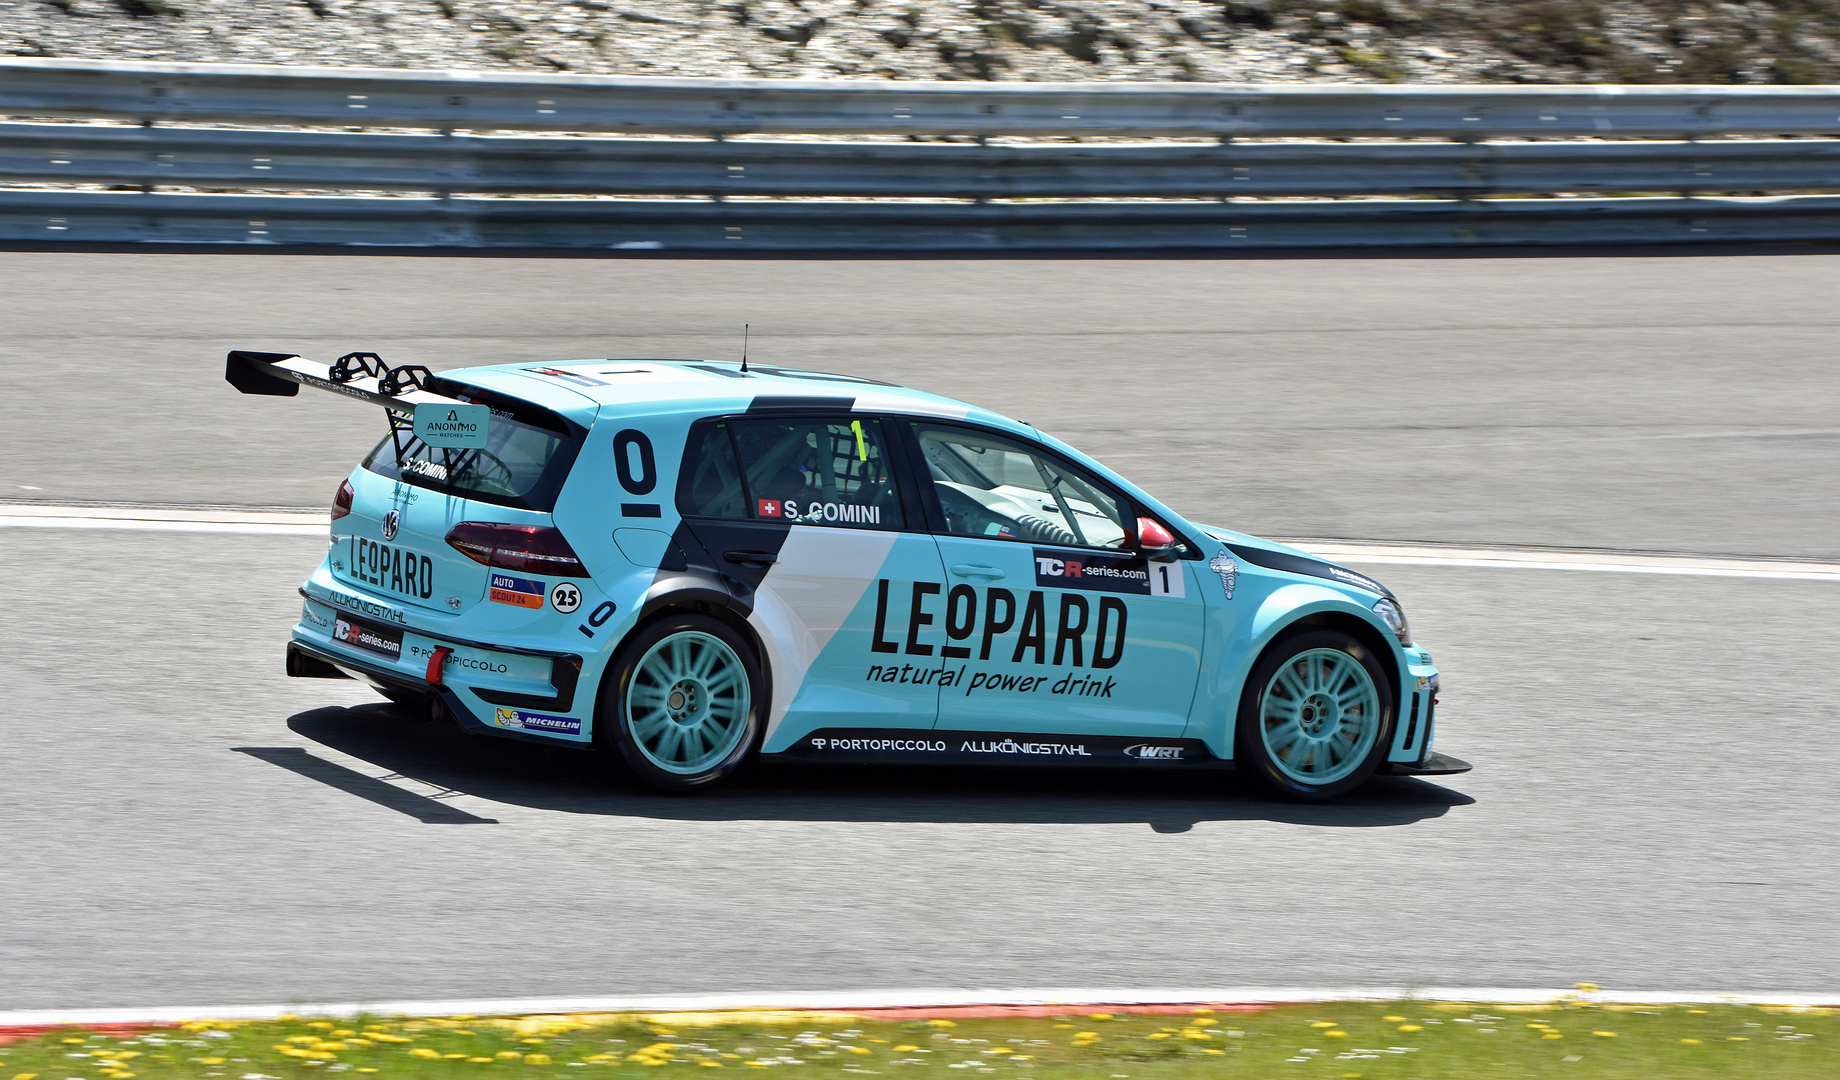 Leopard-Racing